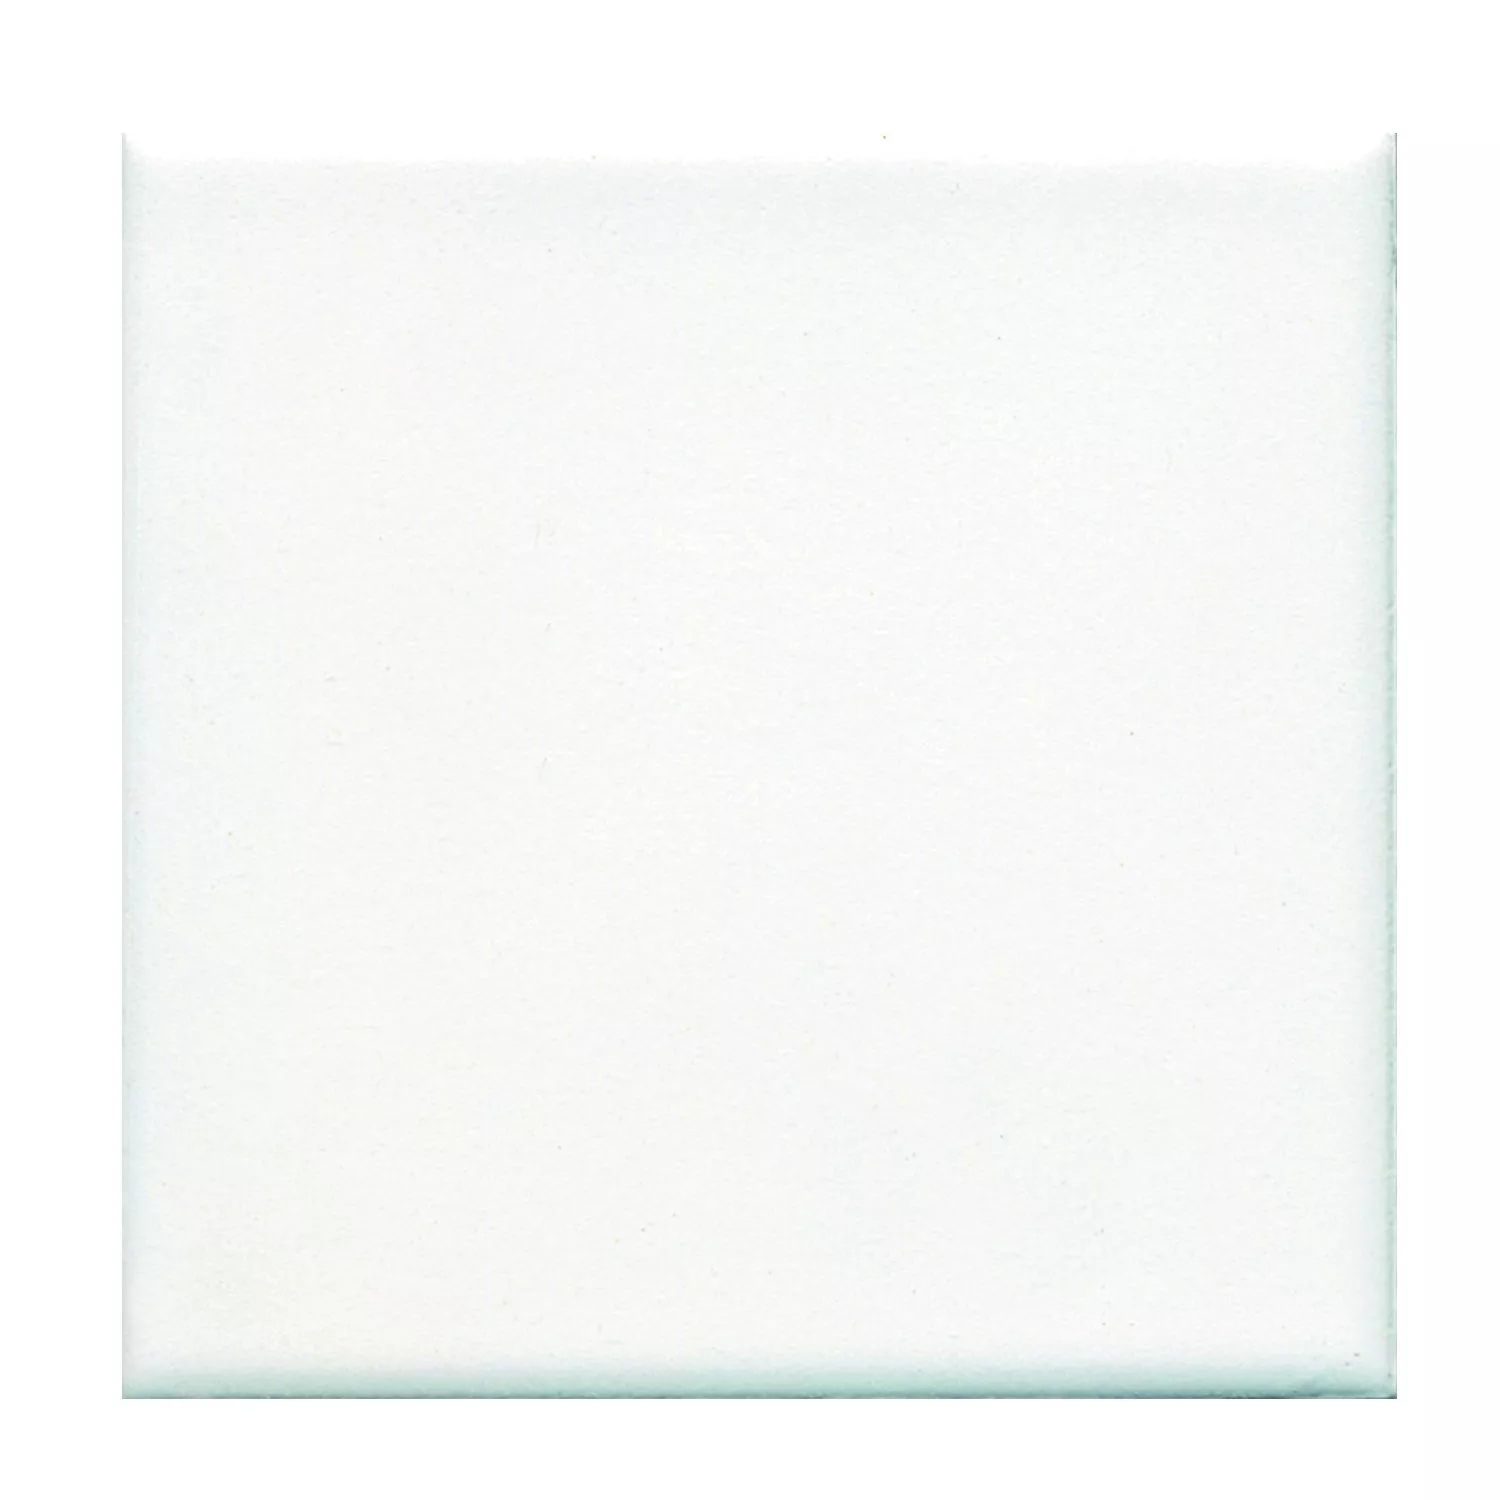 Sample Floor Tiles Adventure White Mat 15x15cm